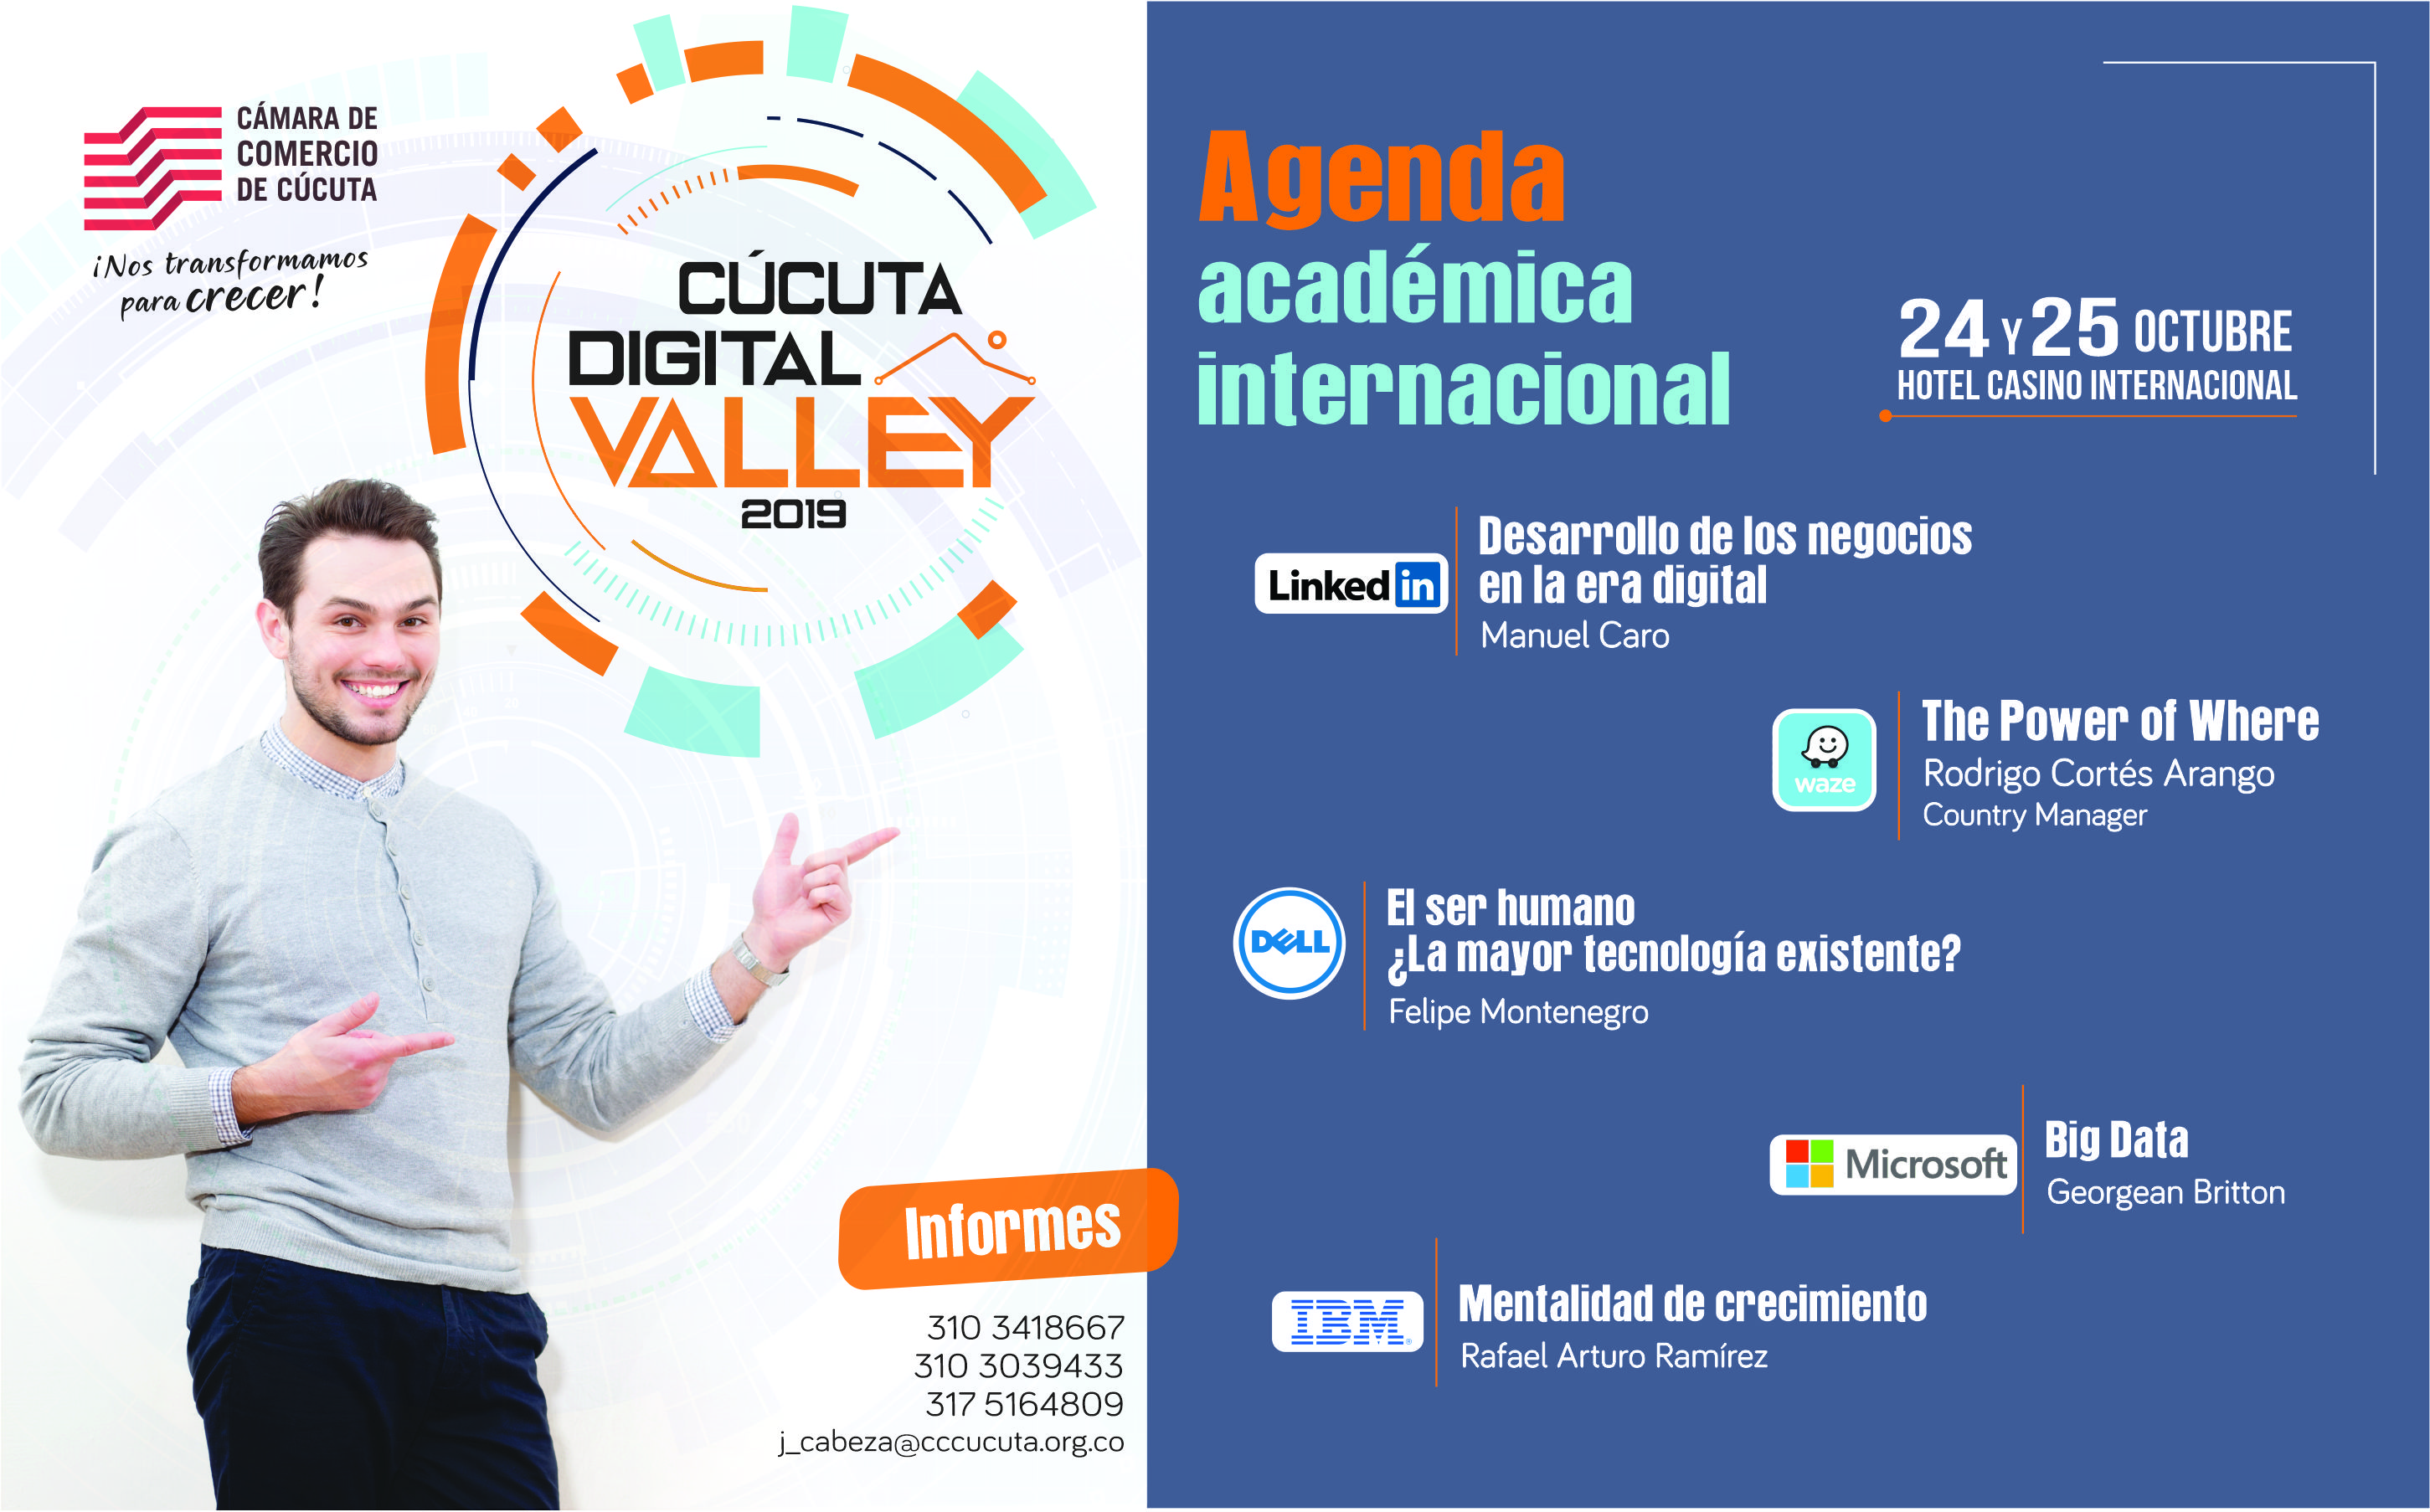 Participe Gratis en Ccuta Digital Valley